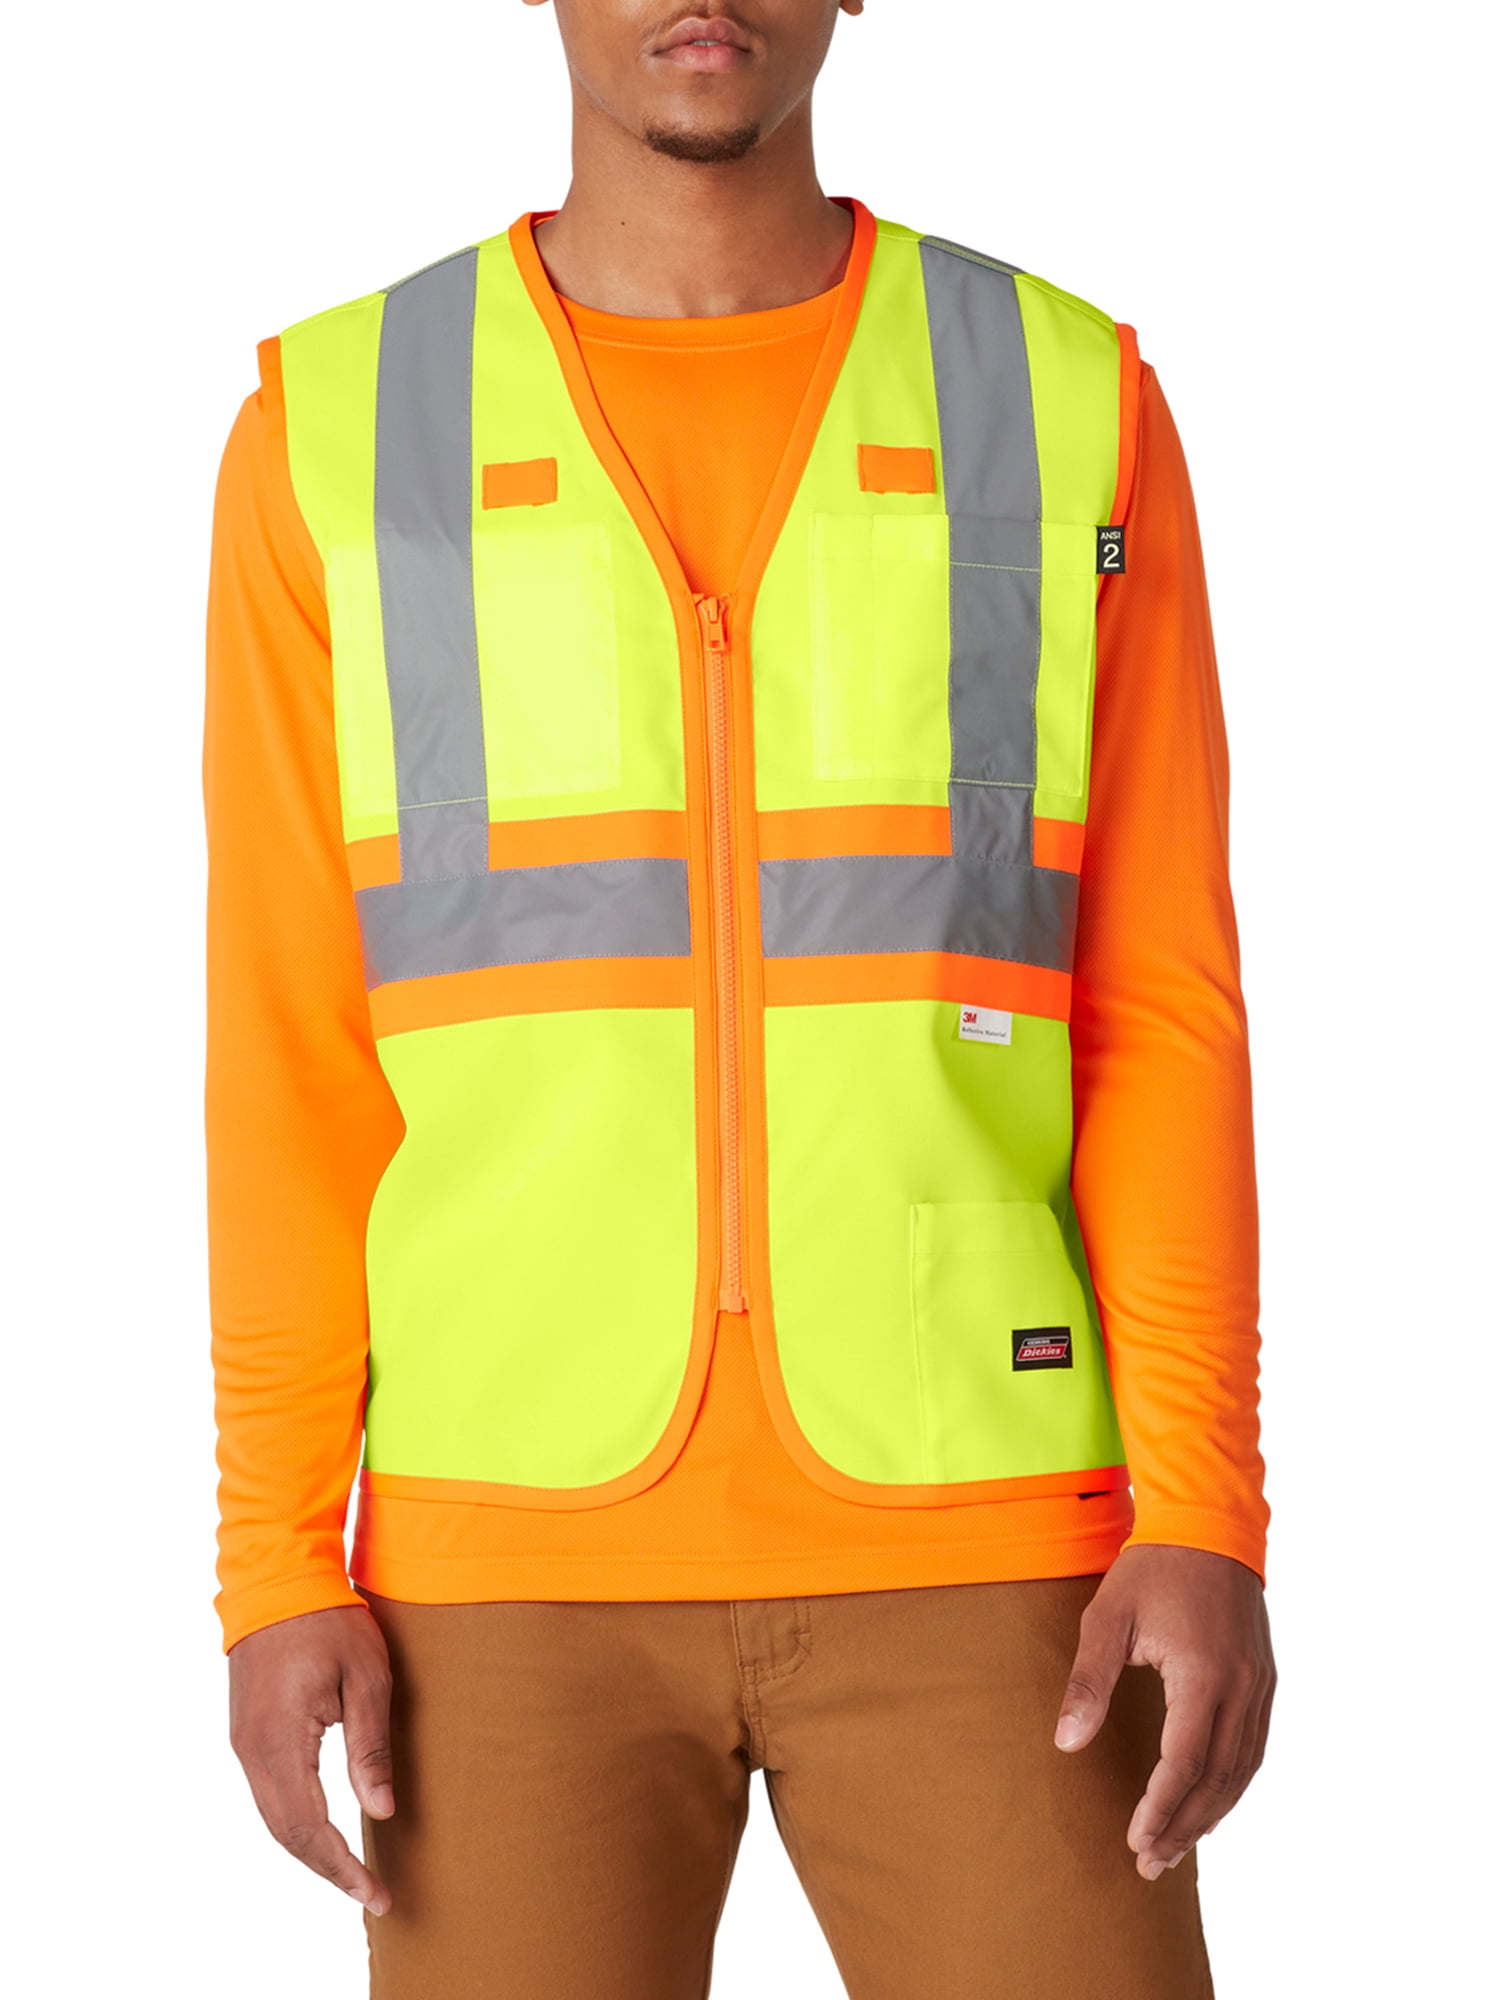 BL_ Adjustable Safety High Visibility Reflective Vest Elastic Strap Jacket Novel 